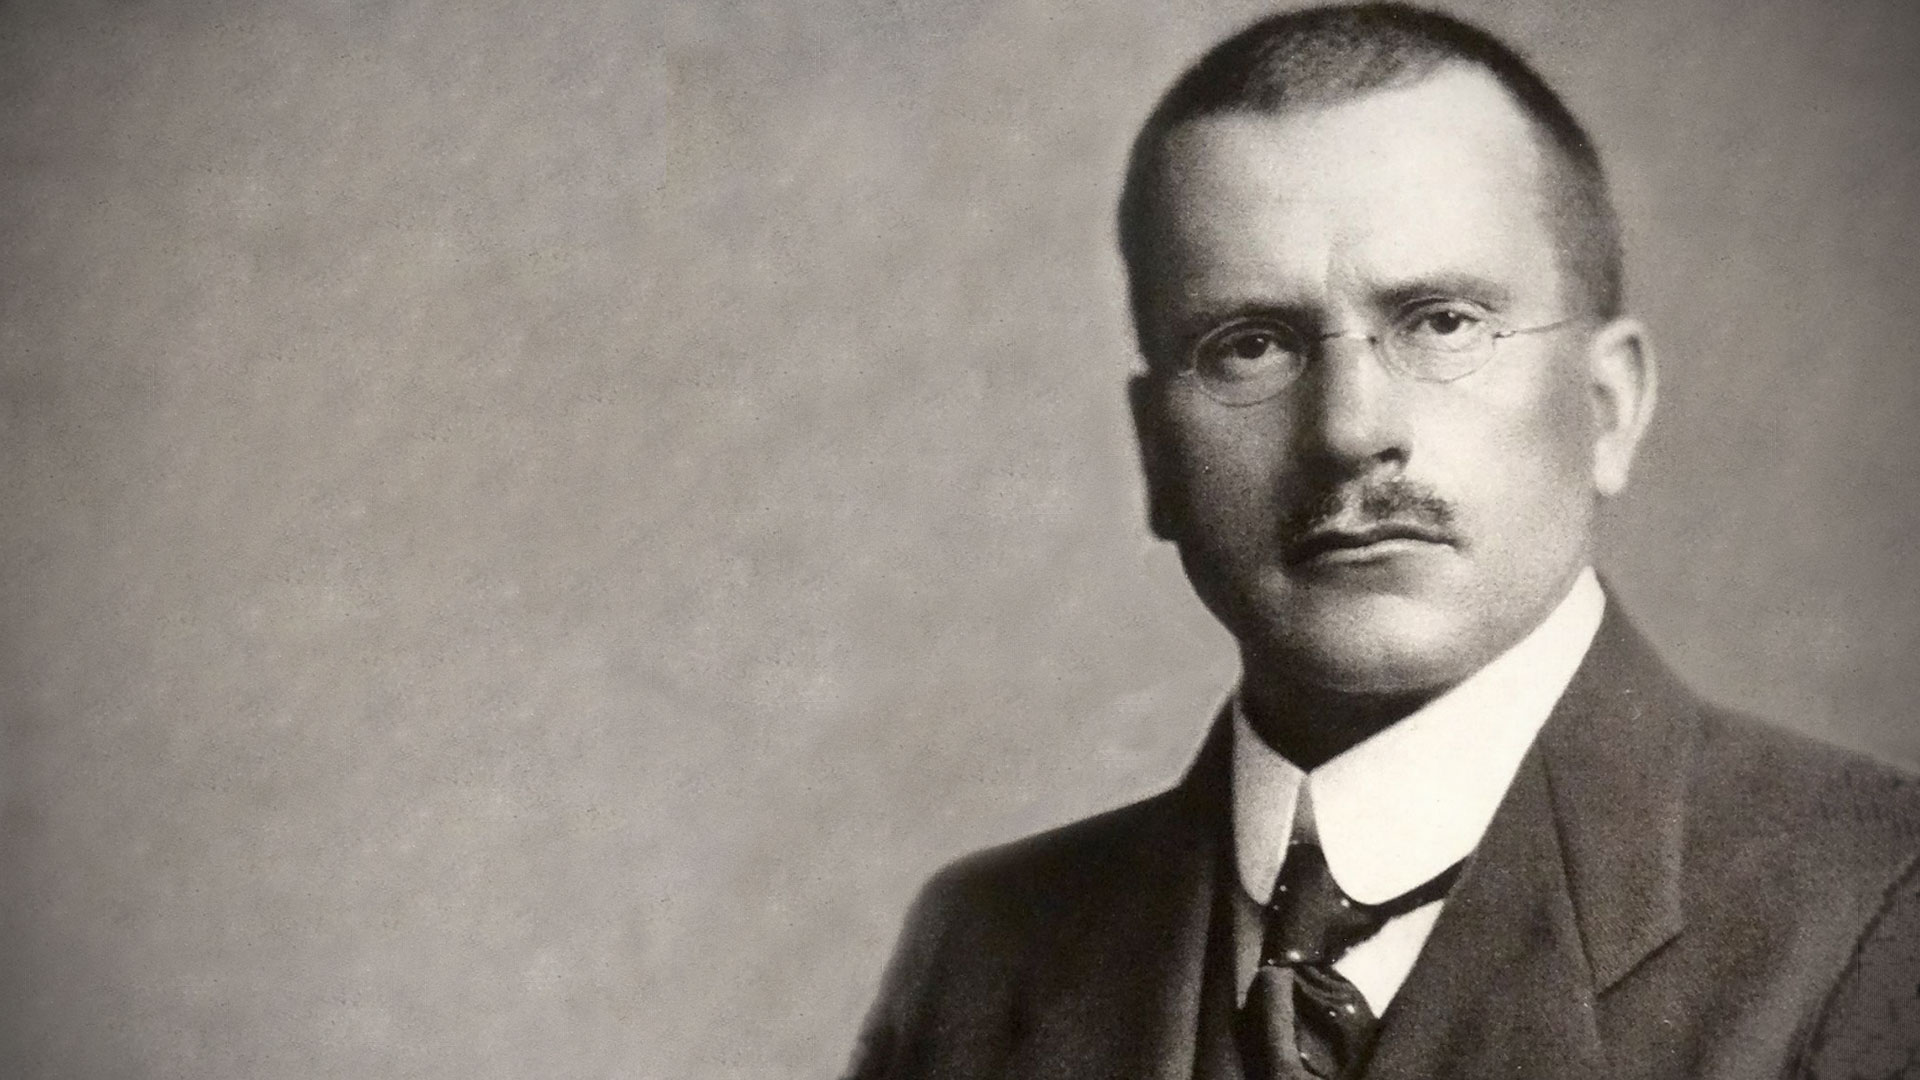 Carl Jung Biography